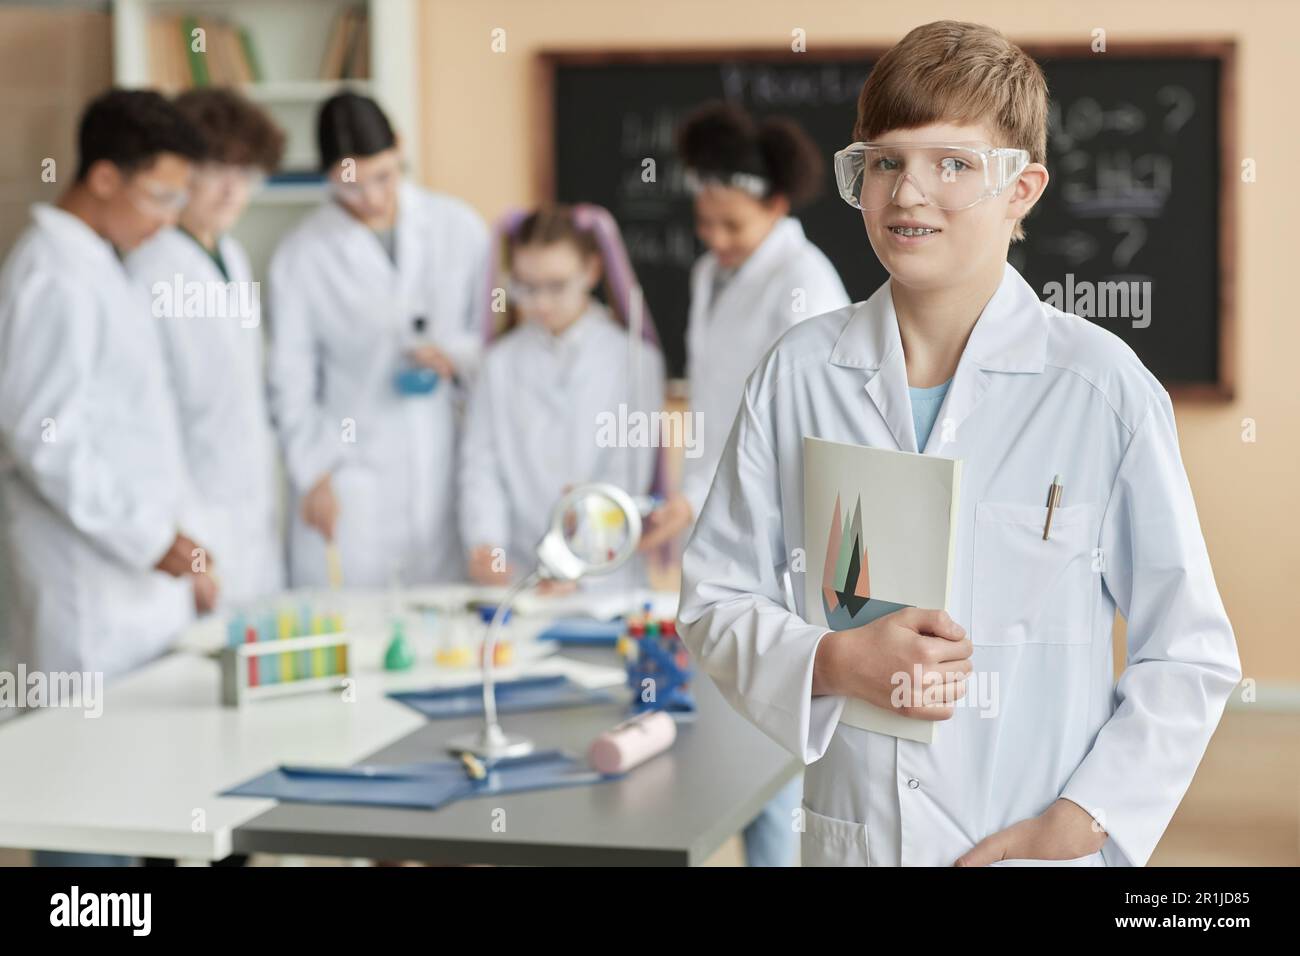 Porträt eines Teenager-Schülers, der einen Laborkittel im Wissenschaftsunterricht trägt und mit einer Gruppe von Kindern im Hintergrund in die Kamera schaut, Kopierraum Stockfoto